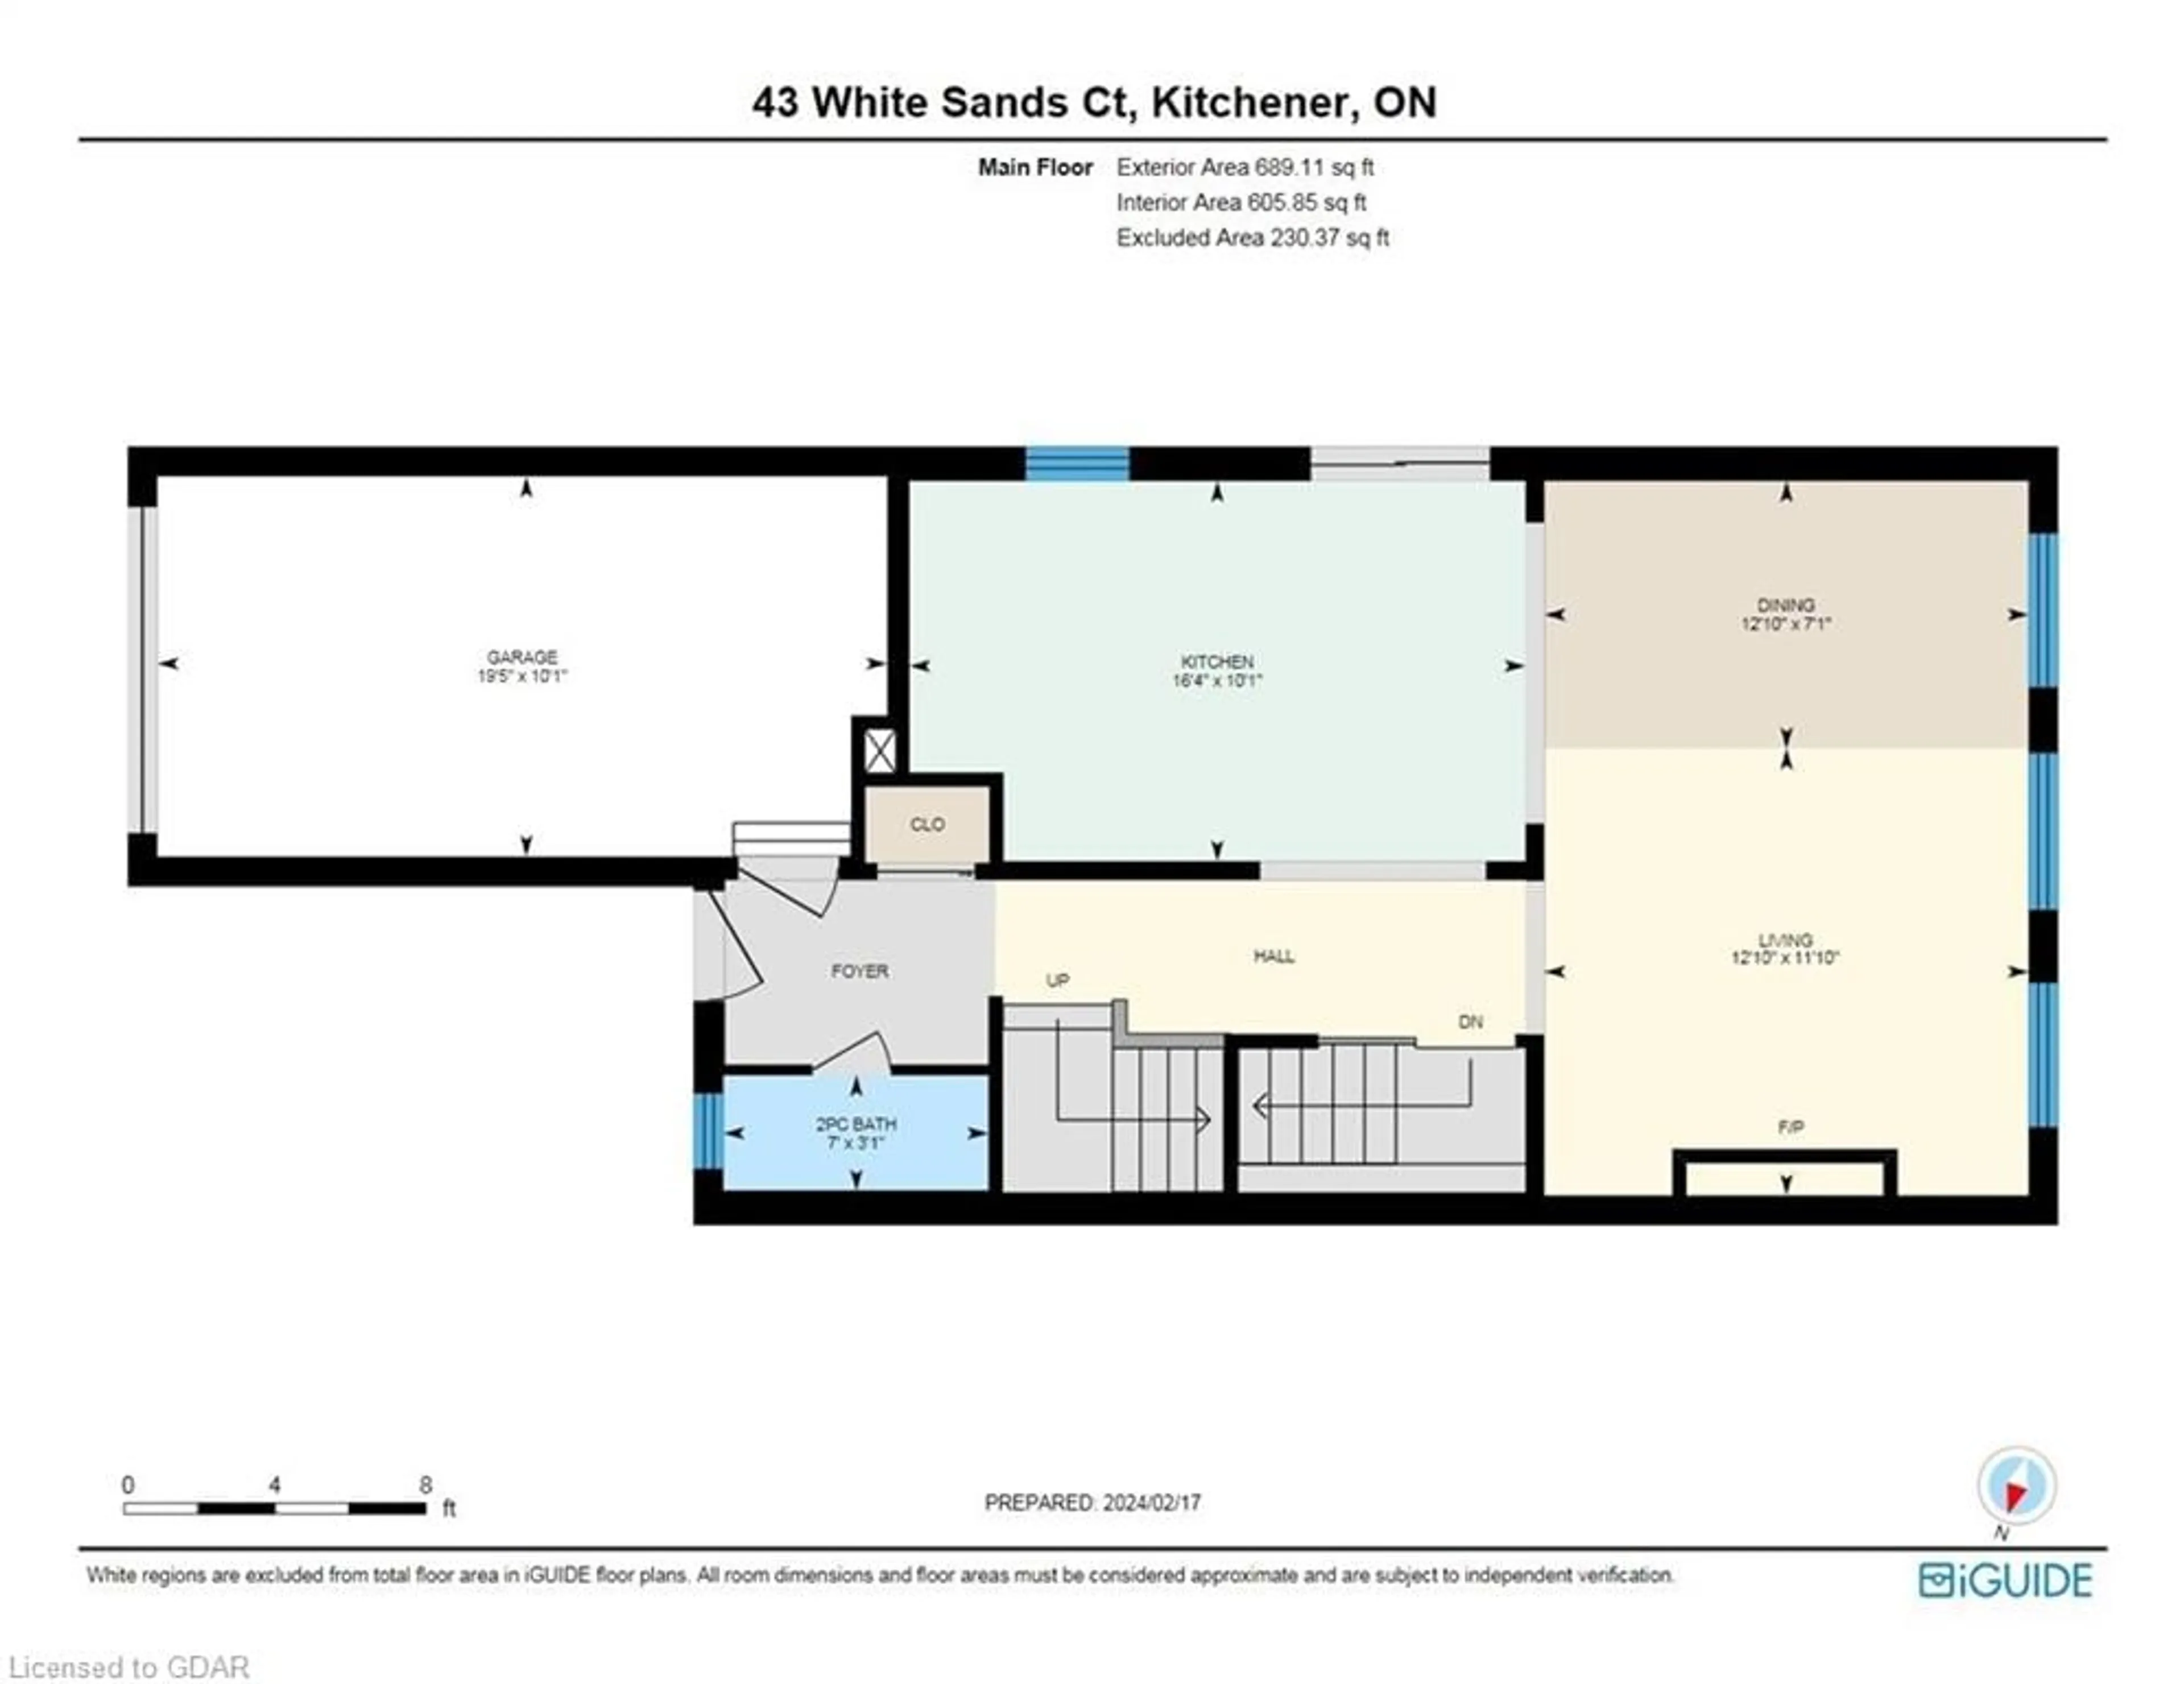 Floor plan for 43 White Sands Crt, Kitchener Ontario N2E 3S4